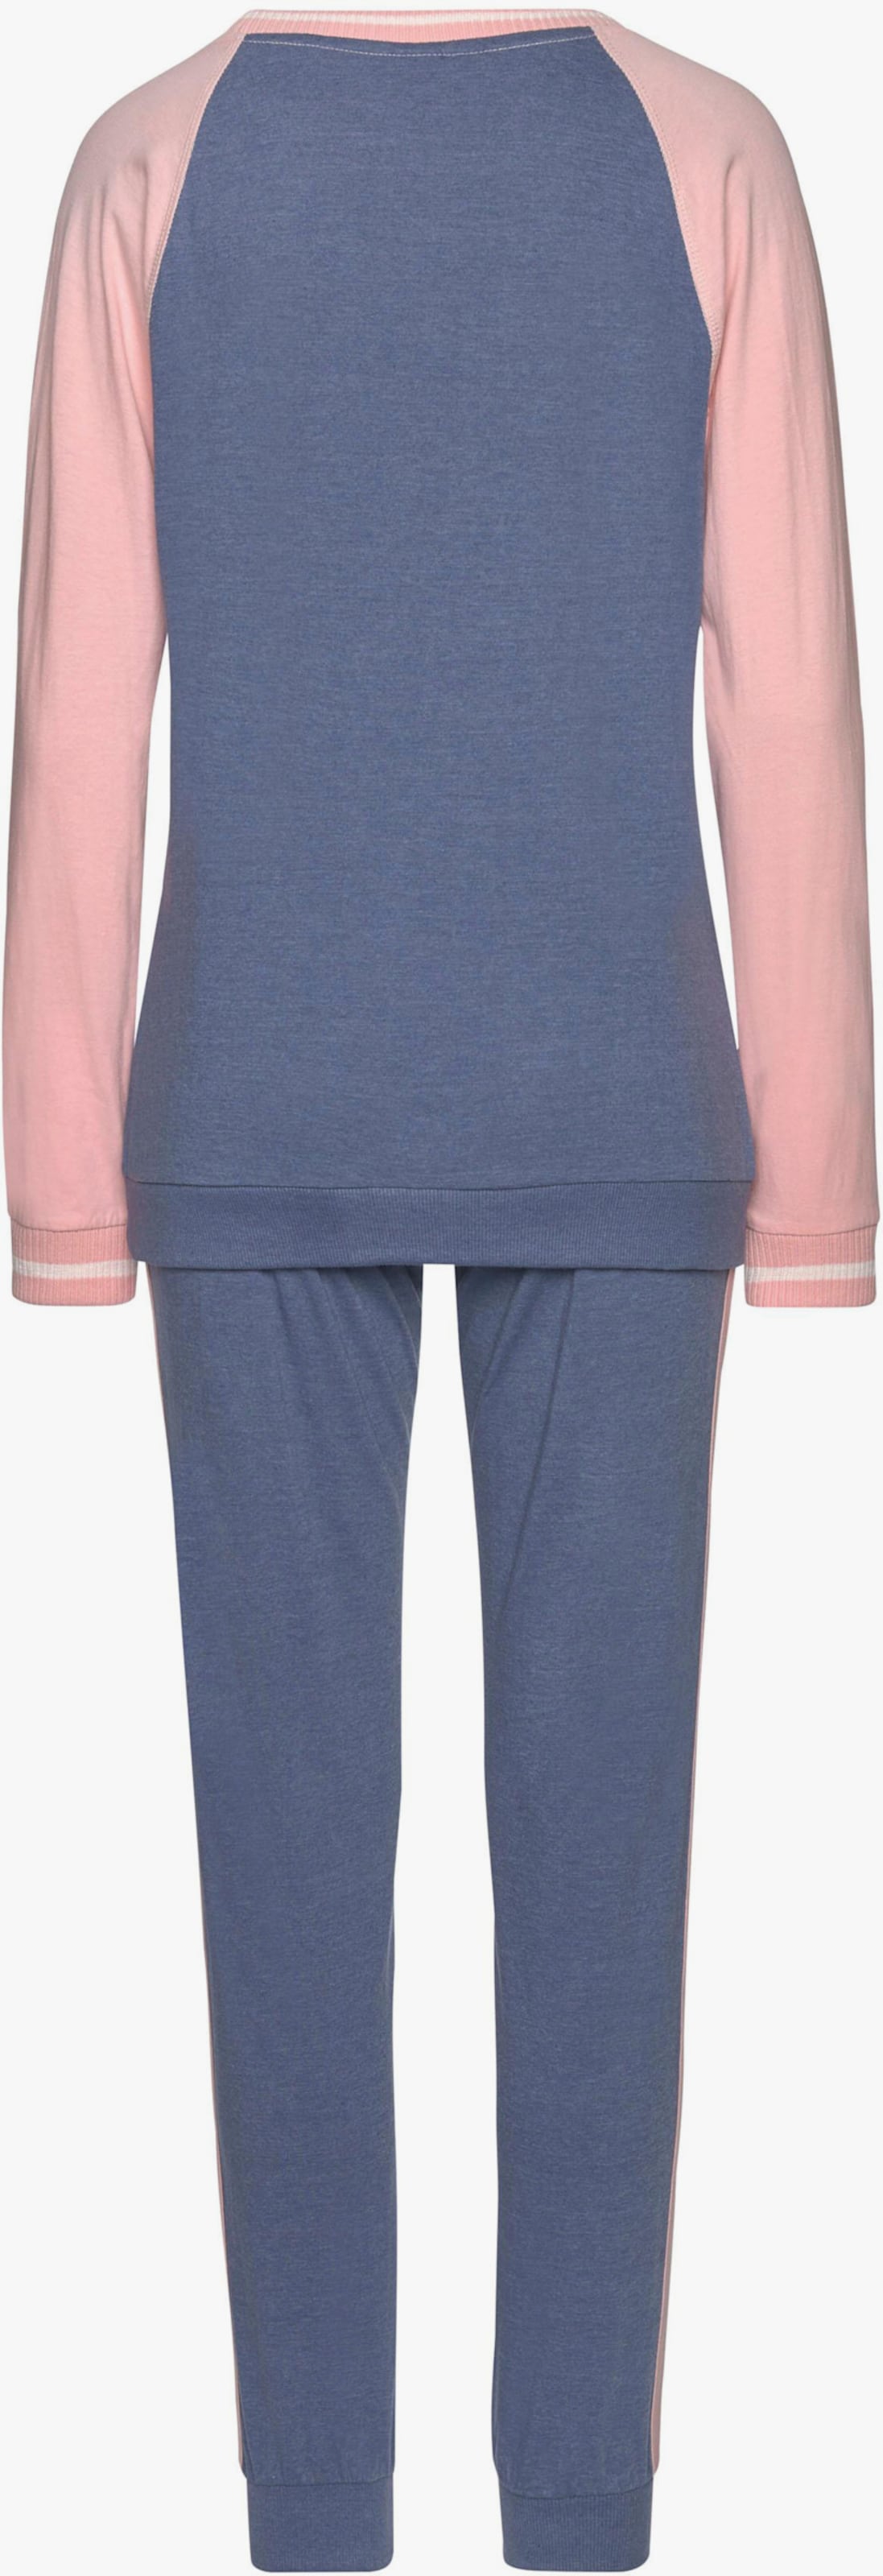 Arizona Pyjama - blauw gemêleerd